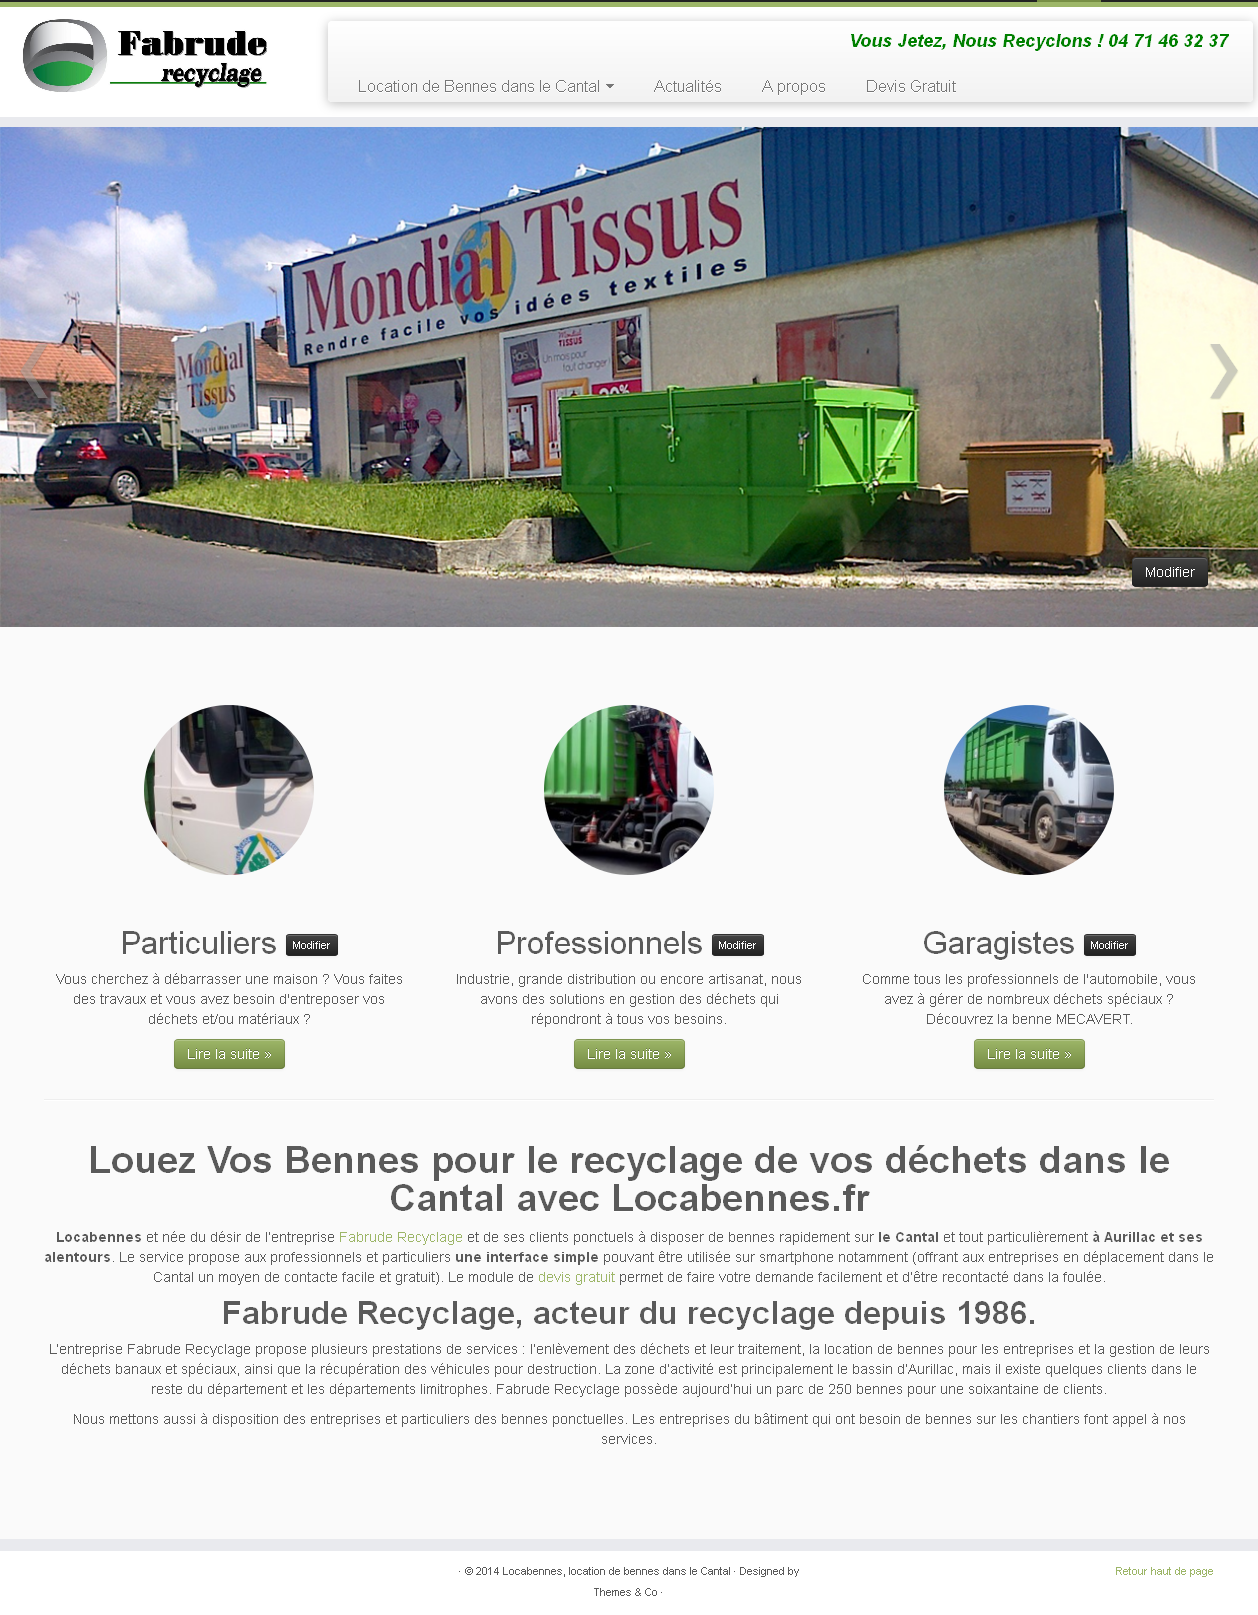 Site pour le recyclage des déchets et location de bennes dans le Cantal.